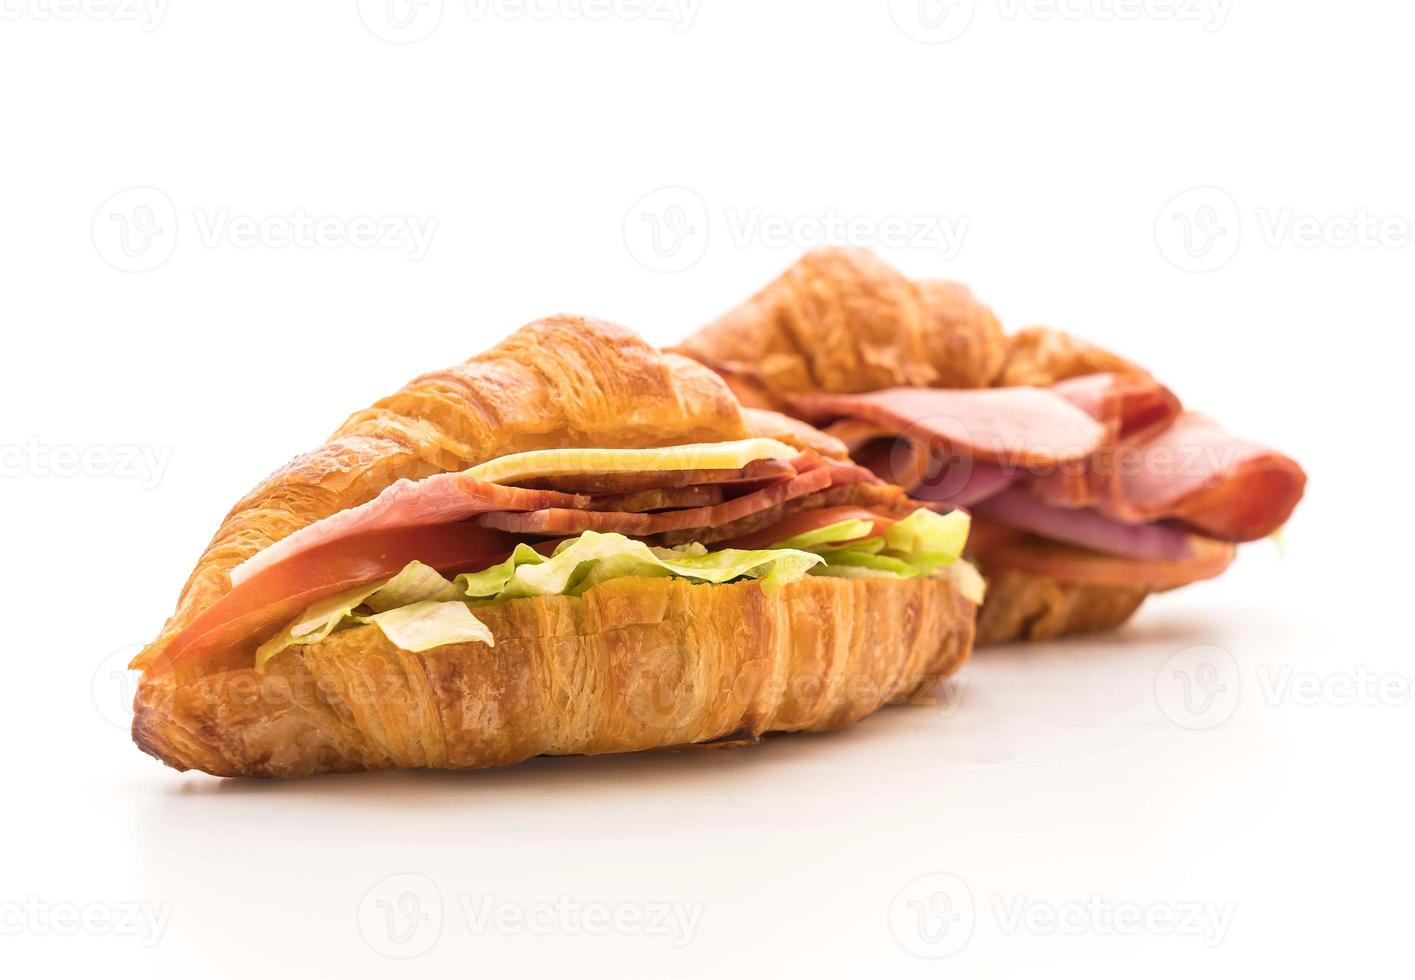 jambon sandwich croissant sur fond blanc photo